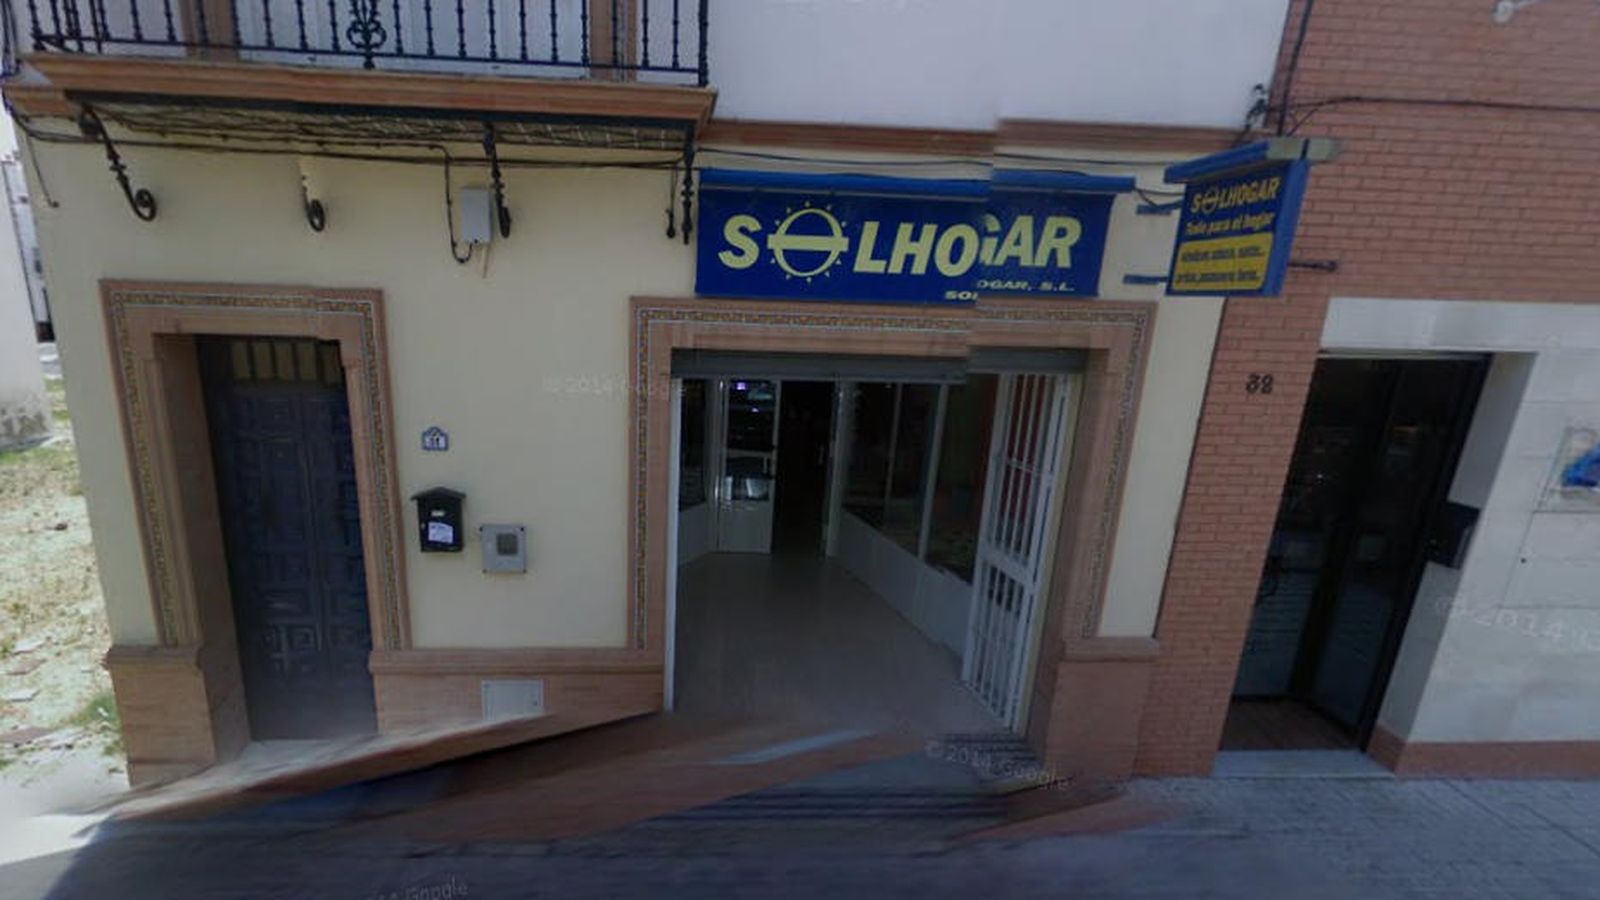 Foto: Imagen de la Comercial Andaluza Solhogar situada en El Viso del Alcor. Fue la empresa más beneficiada de todas. (Google Maps)